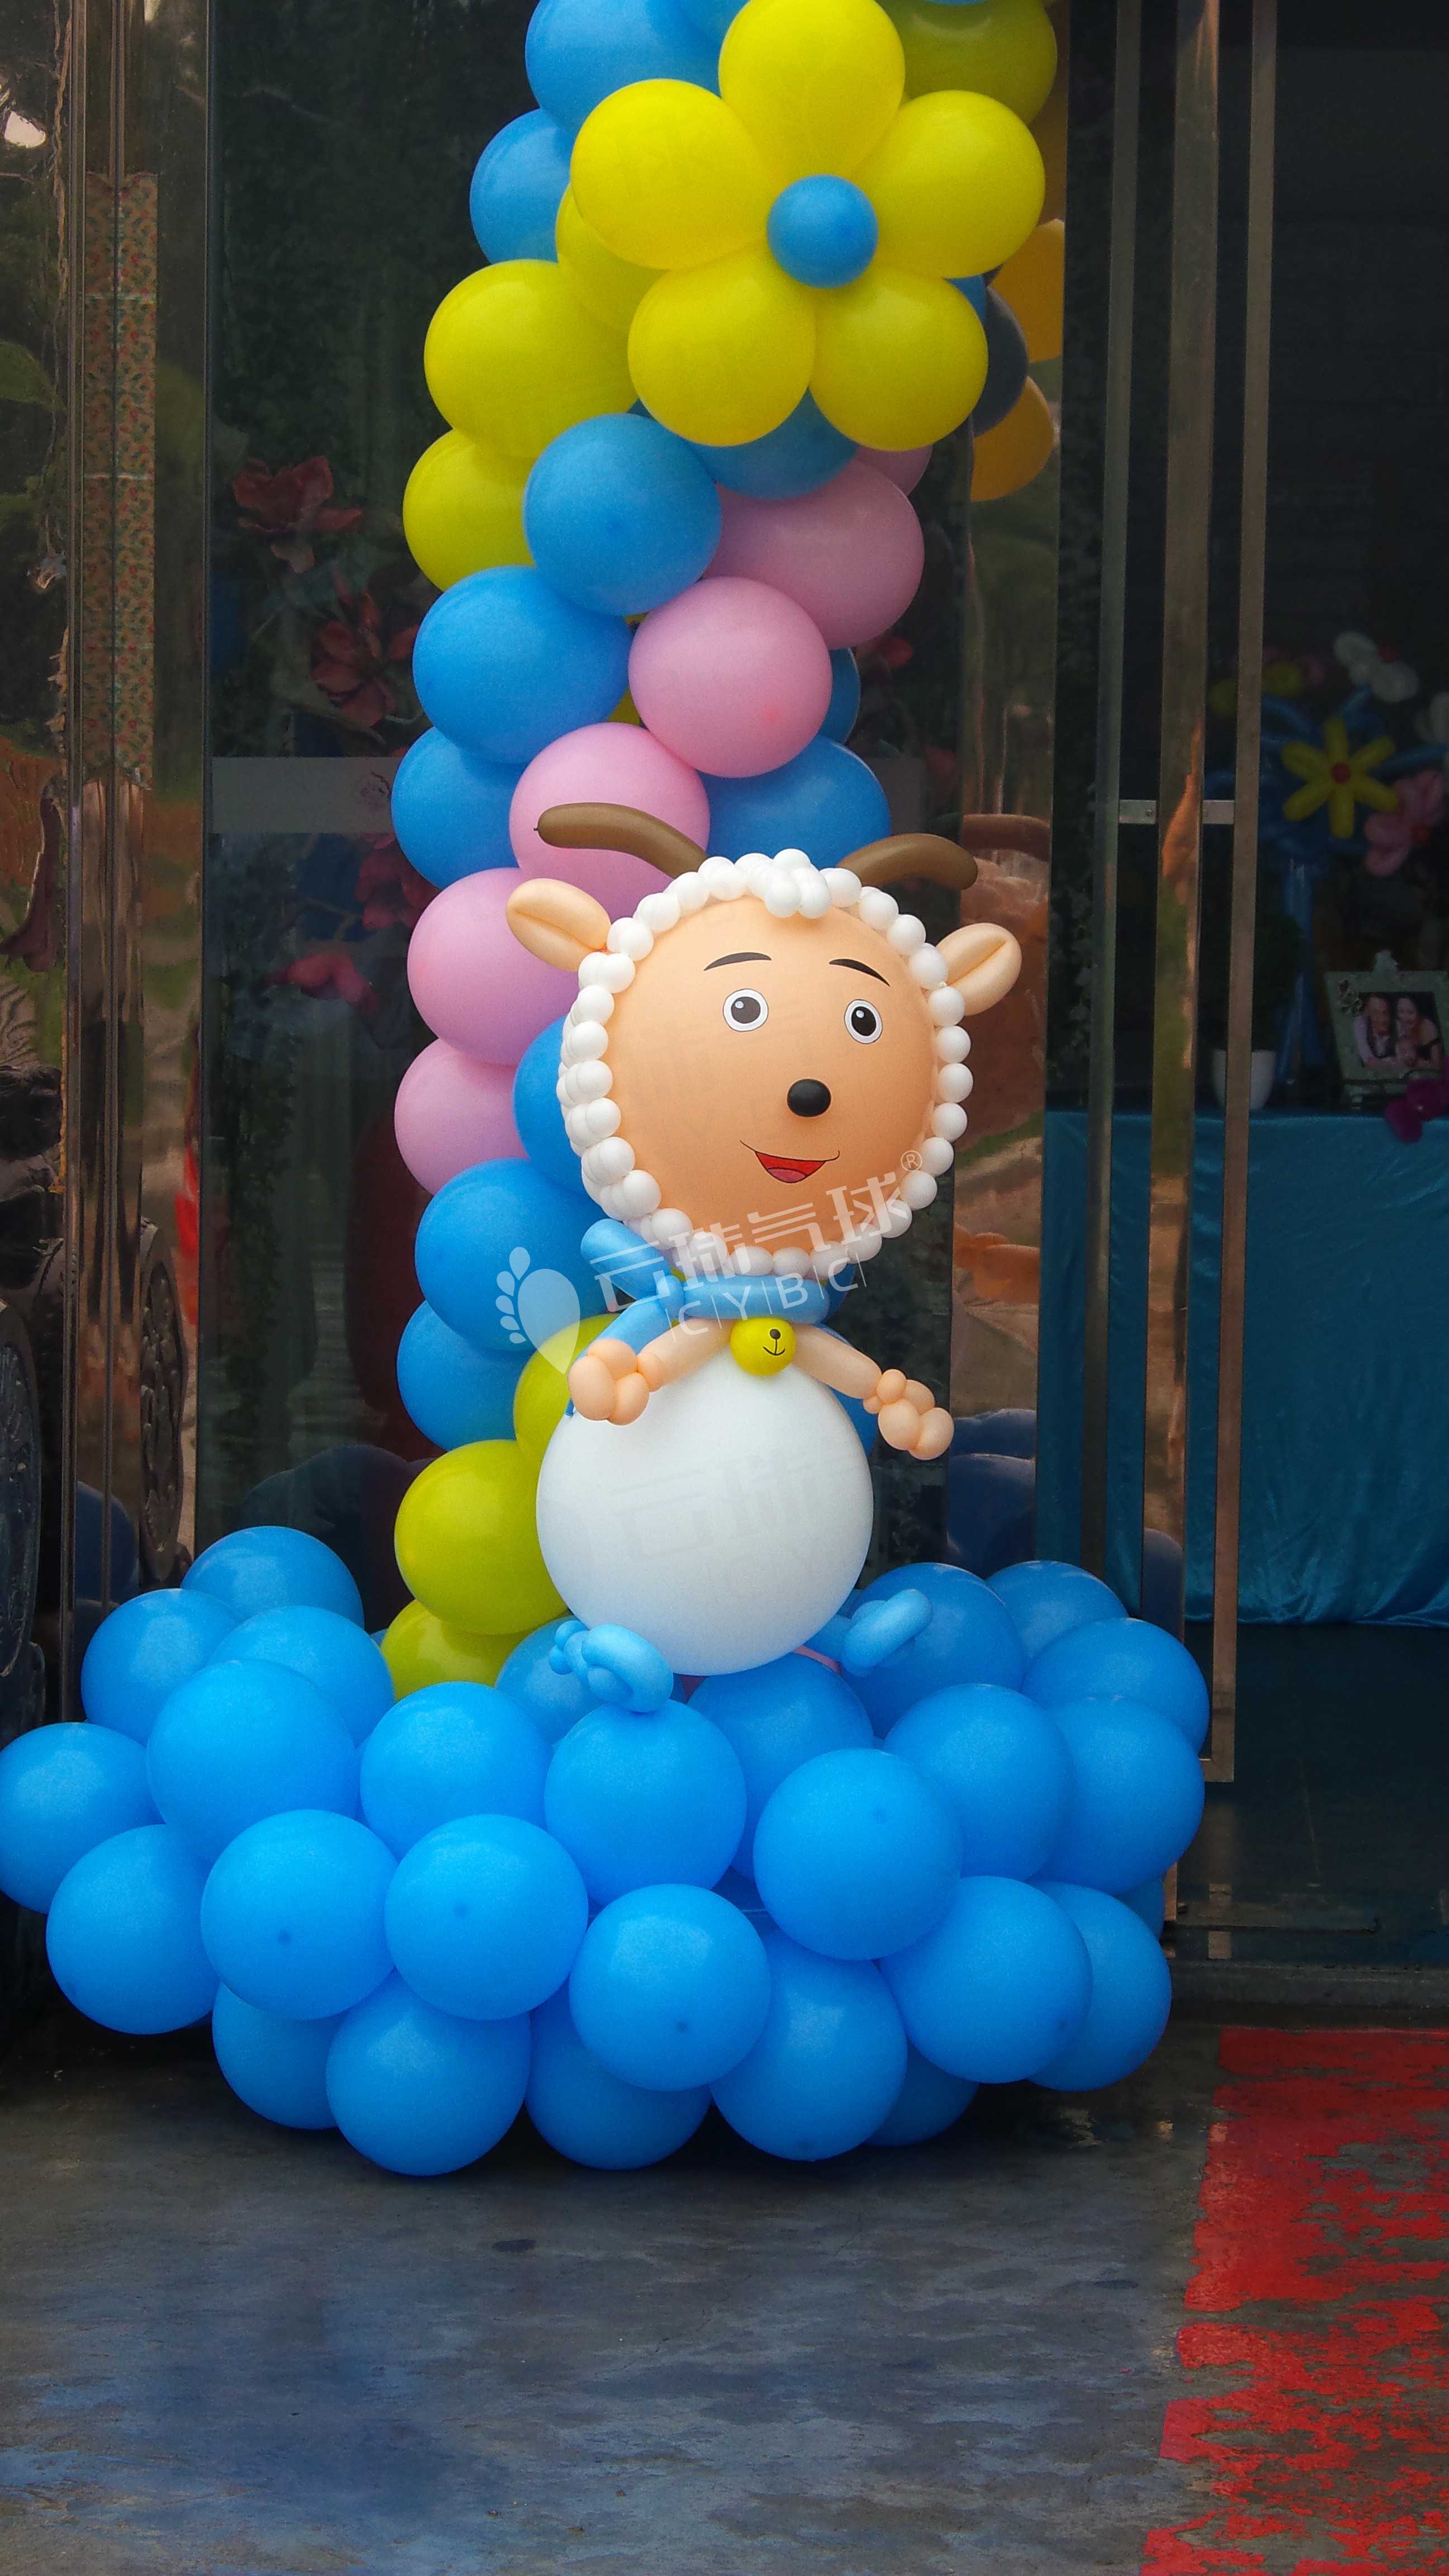 喜羊羊气球/羊村主题气球装饰供应喜羊羊气球/羊村主题气球装饰/卡通造型制作